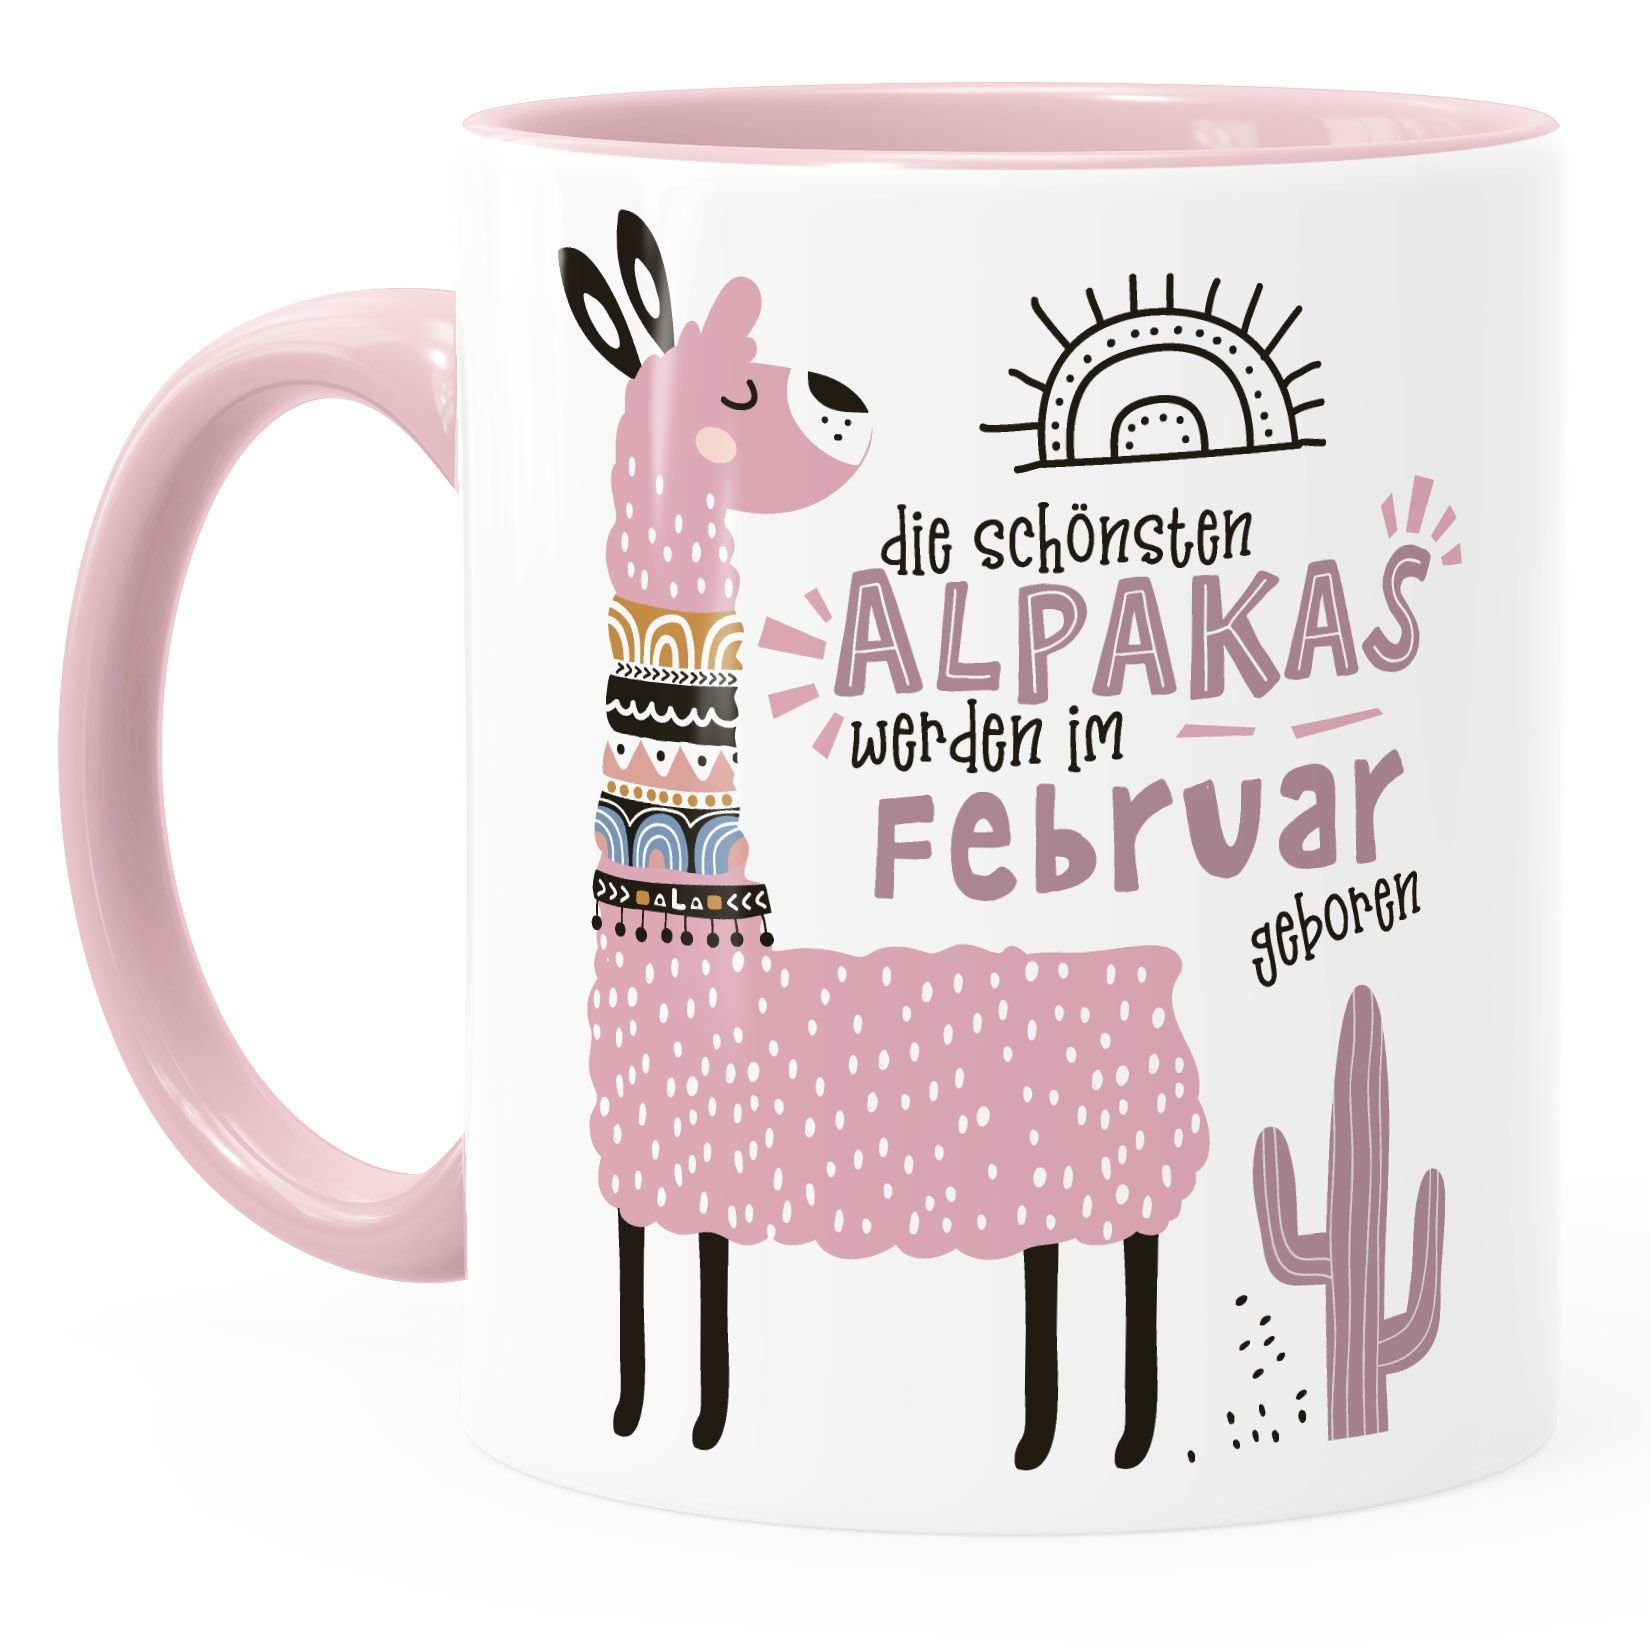 SpecialMe Tasse Kaffee-Tasse Die Alpakas Motiv Lama individuelle werden anpassbares Rosa Geburtags-Geschenke Schönsten Januar-Dezember Februar Keramik SpecialMe®, rosa im geboren Geburtsmonat